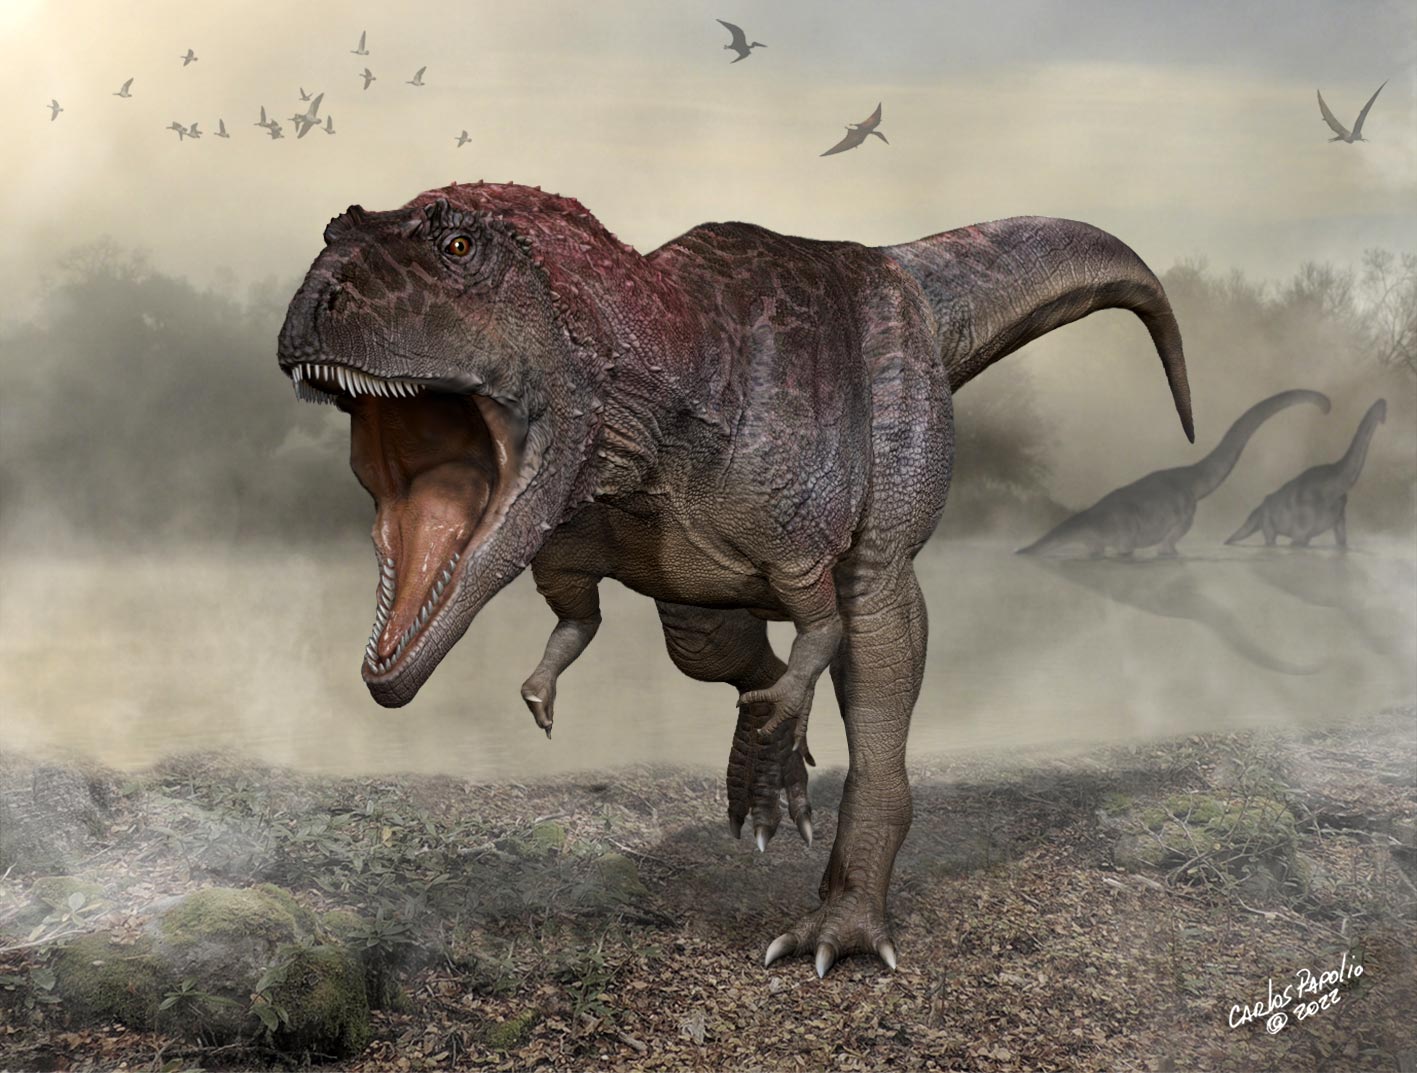 اكتشاف ديناصور عملاق جديد لاحم بأذرع صغيرة مثل T. rex